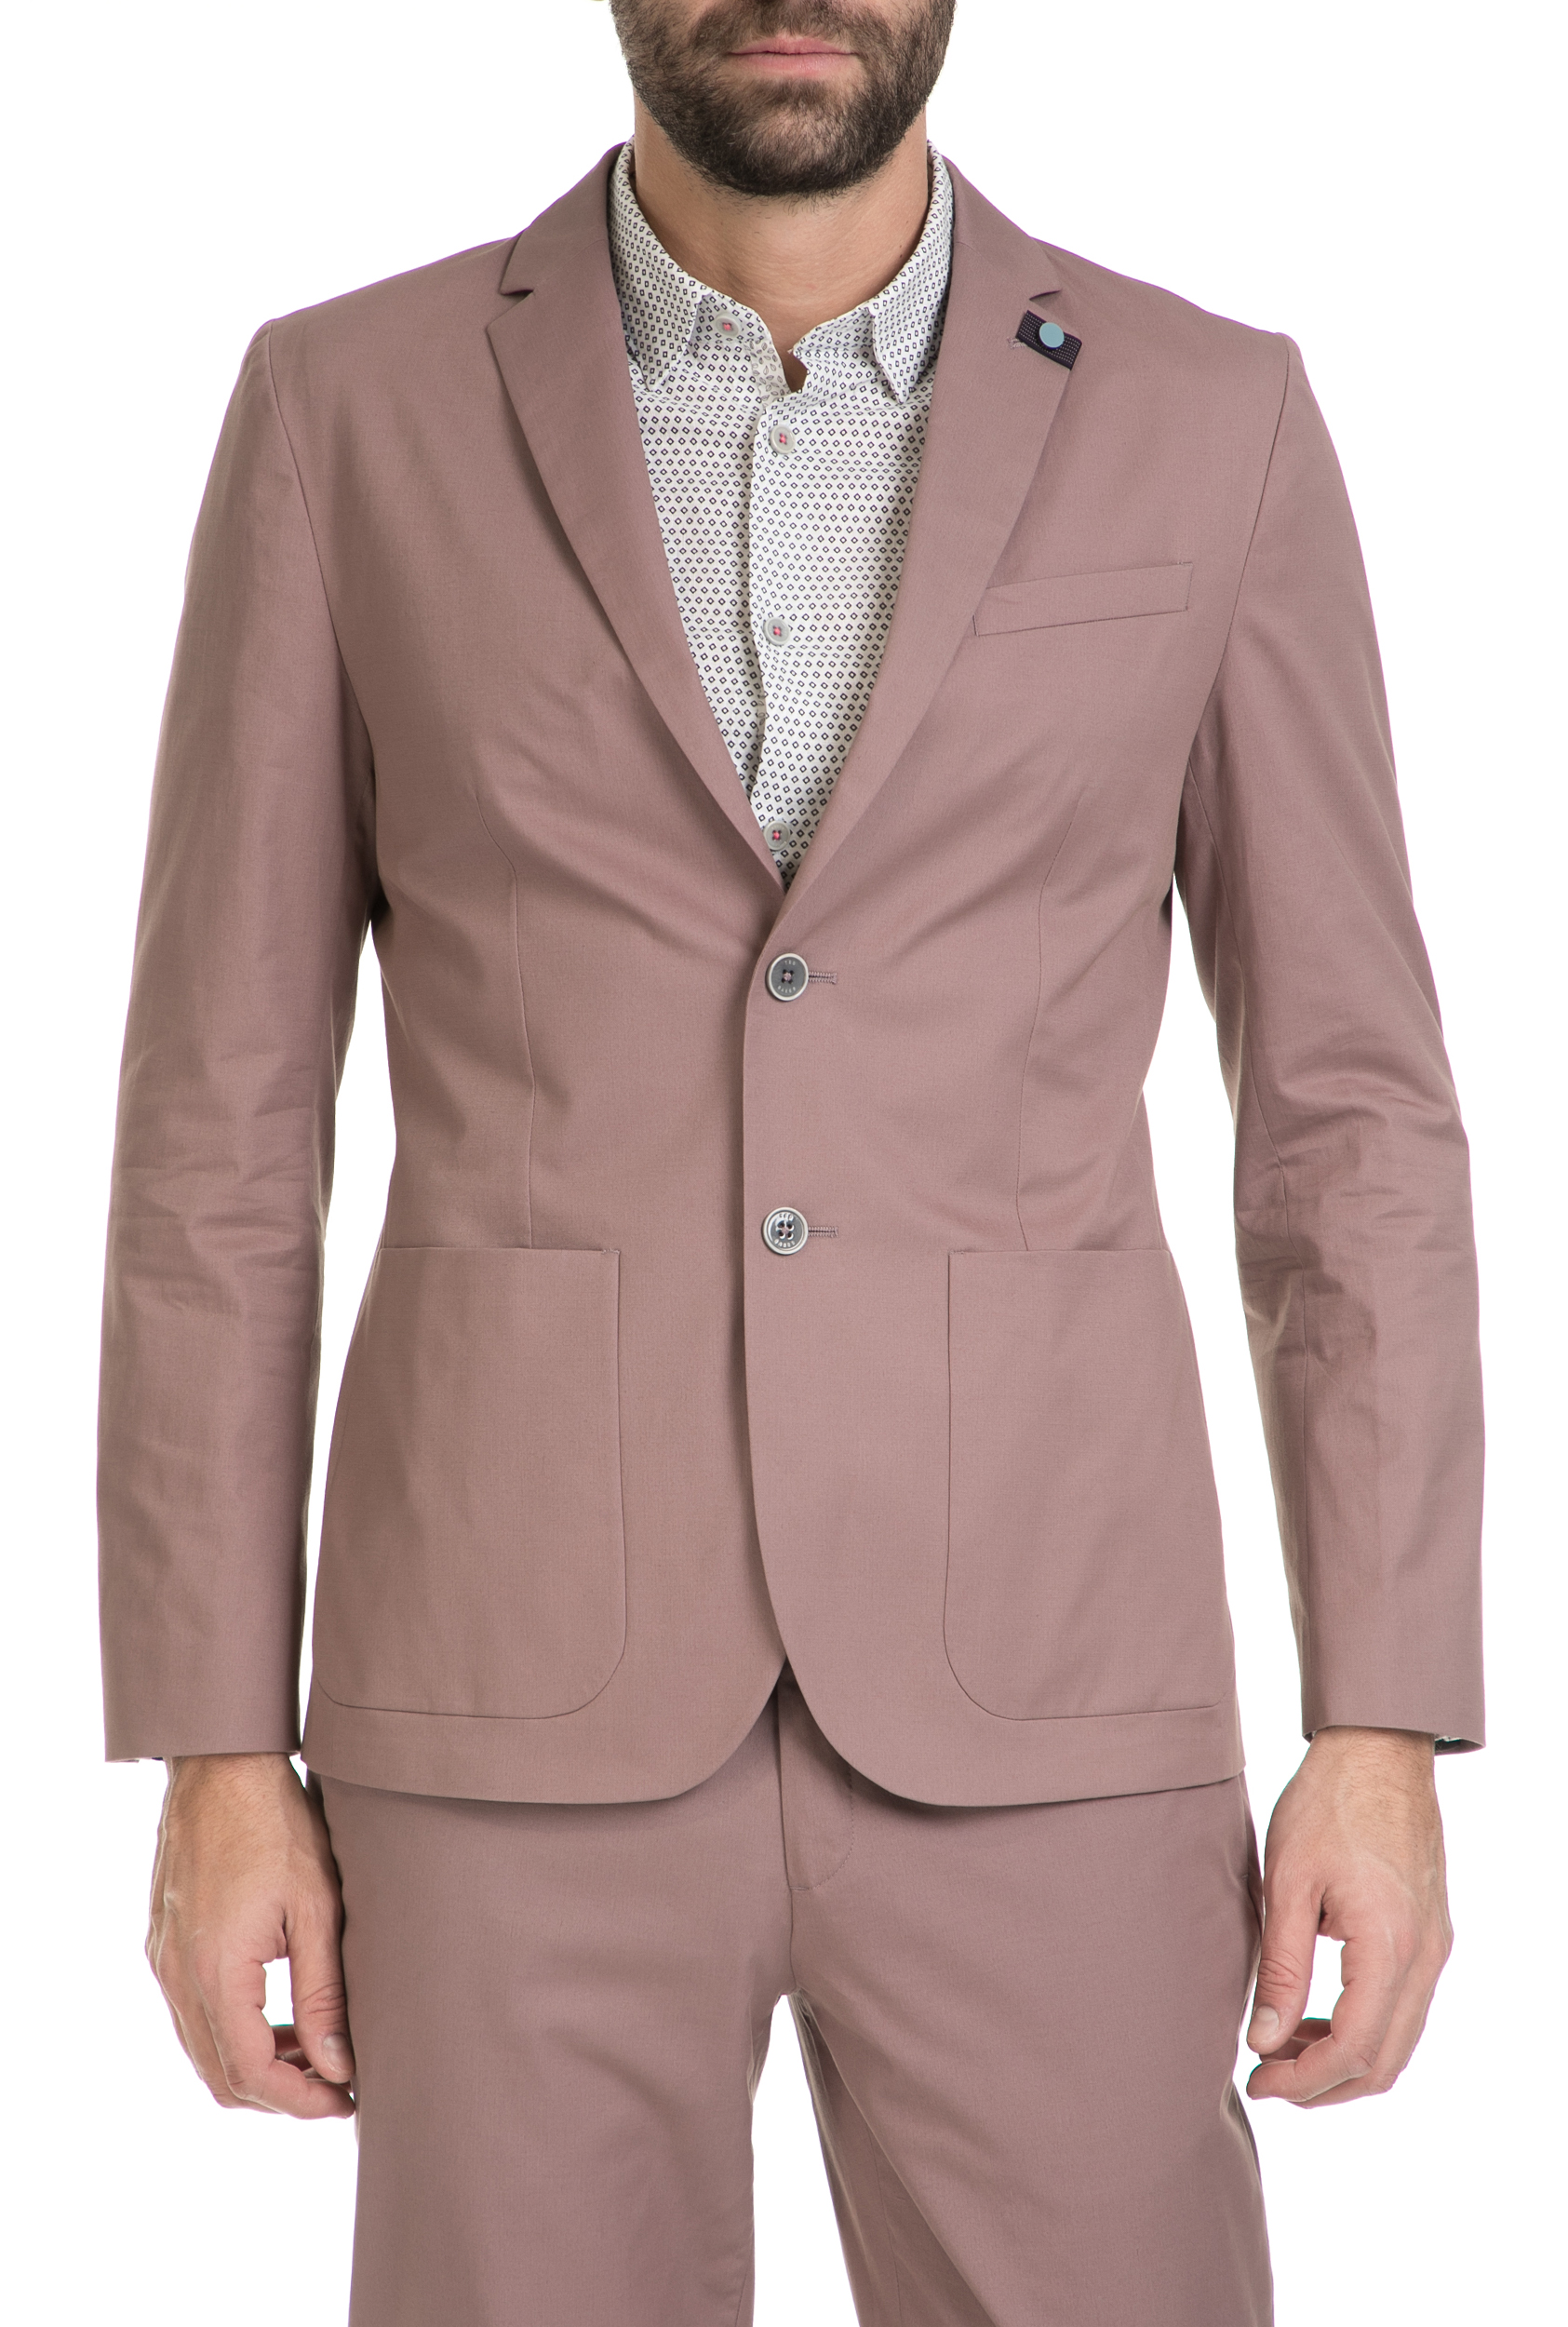 Ανδρικά/Ρούχα/Πανωφόρια/Σακάκια TED BAKER - Ανδρικό σακάκι TED BAKER ροζ-σομόν